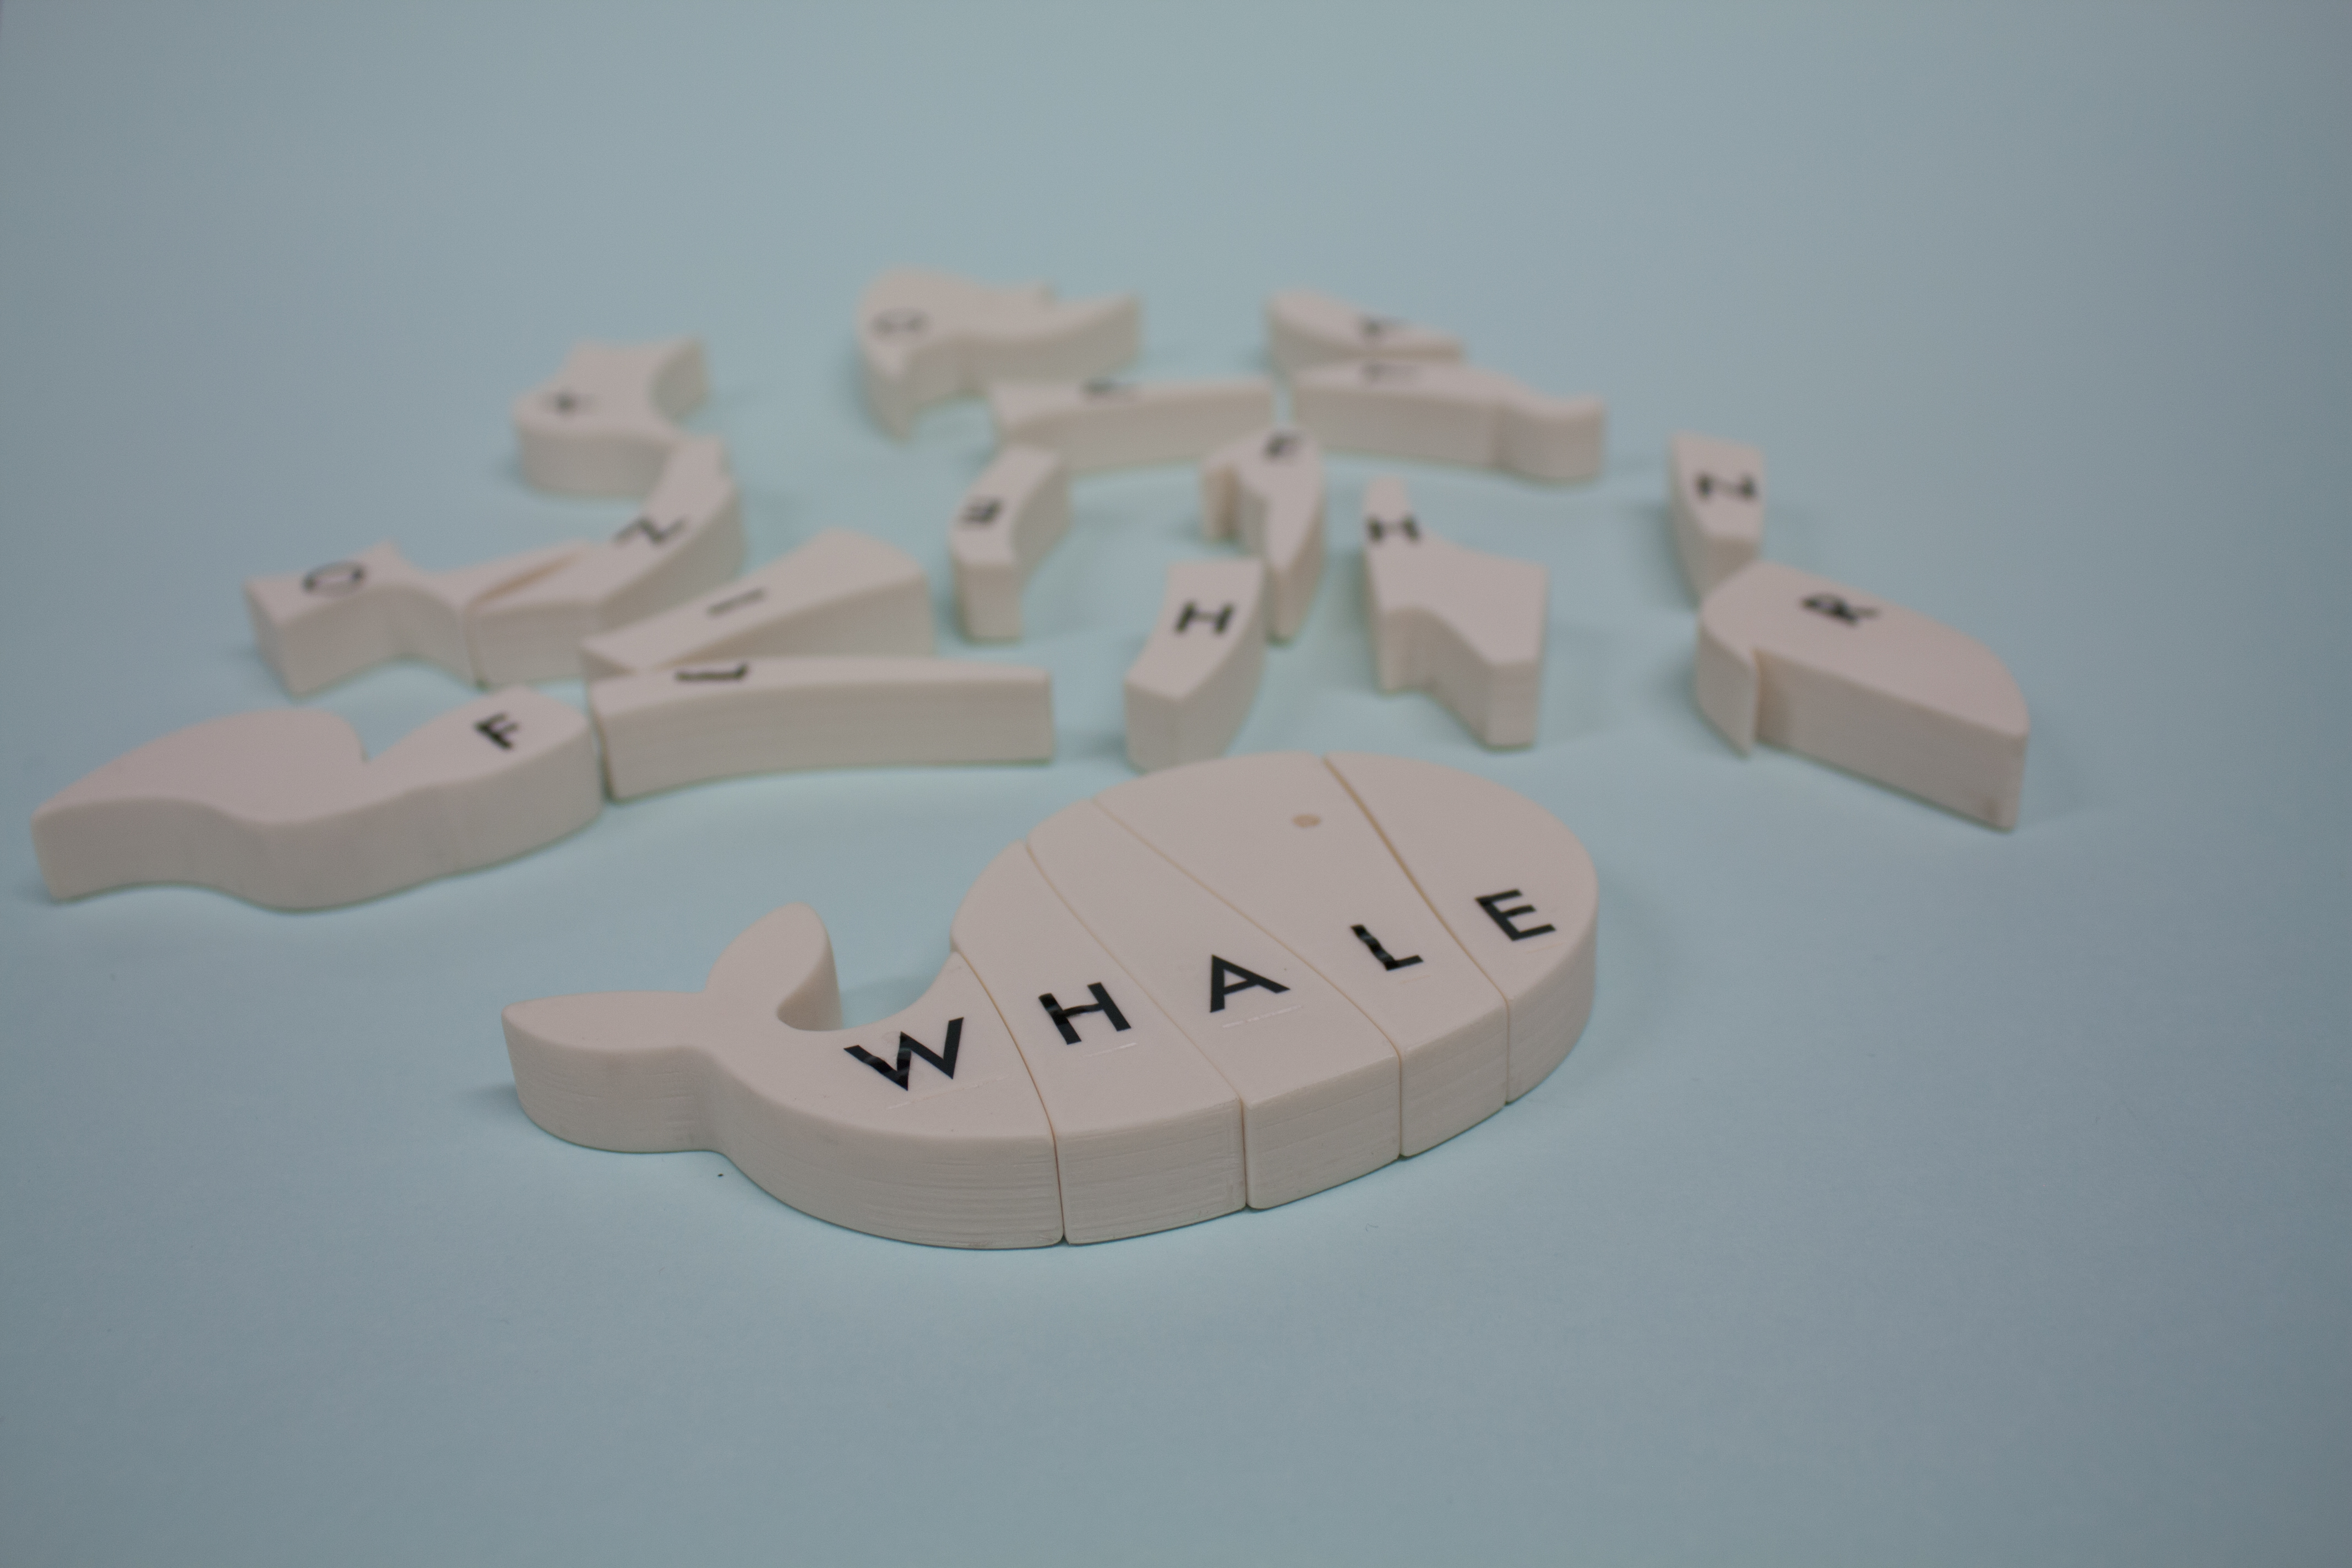 Alle 21 Teile des Puzzles liegen durchmischt auf dem Tisch. Der zusammengesetzte Walfisch liegt im vorderen Bereich des Bildes.